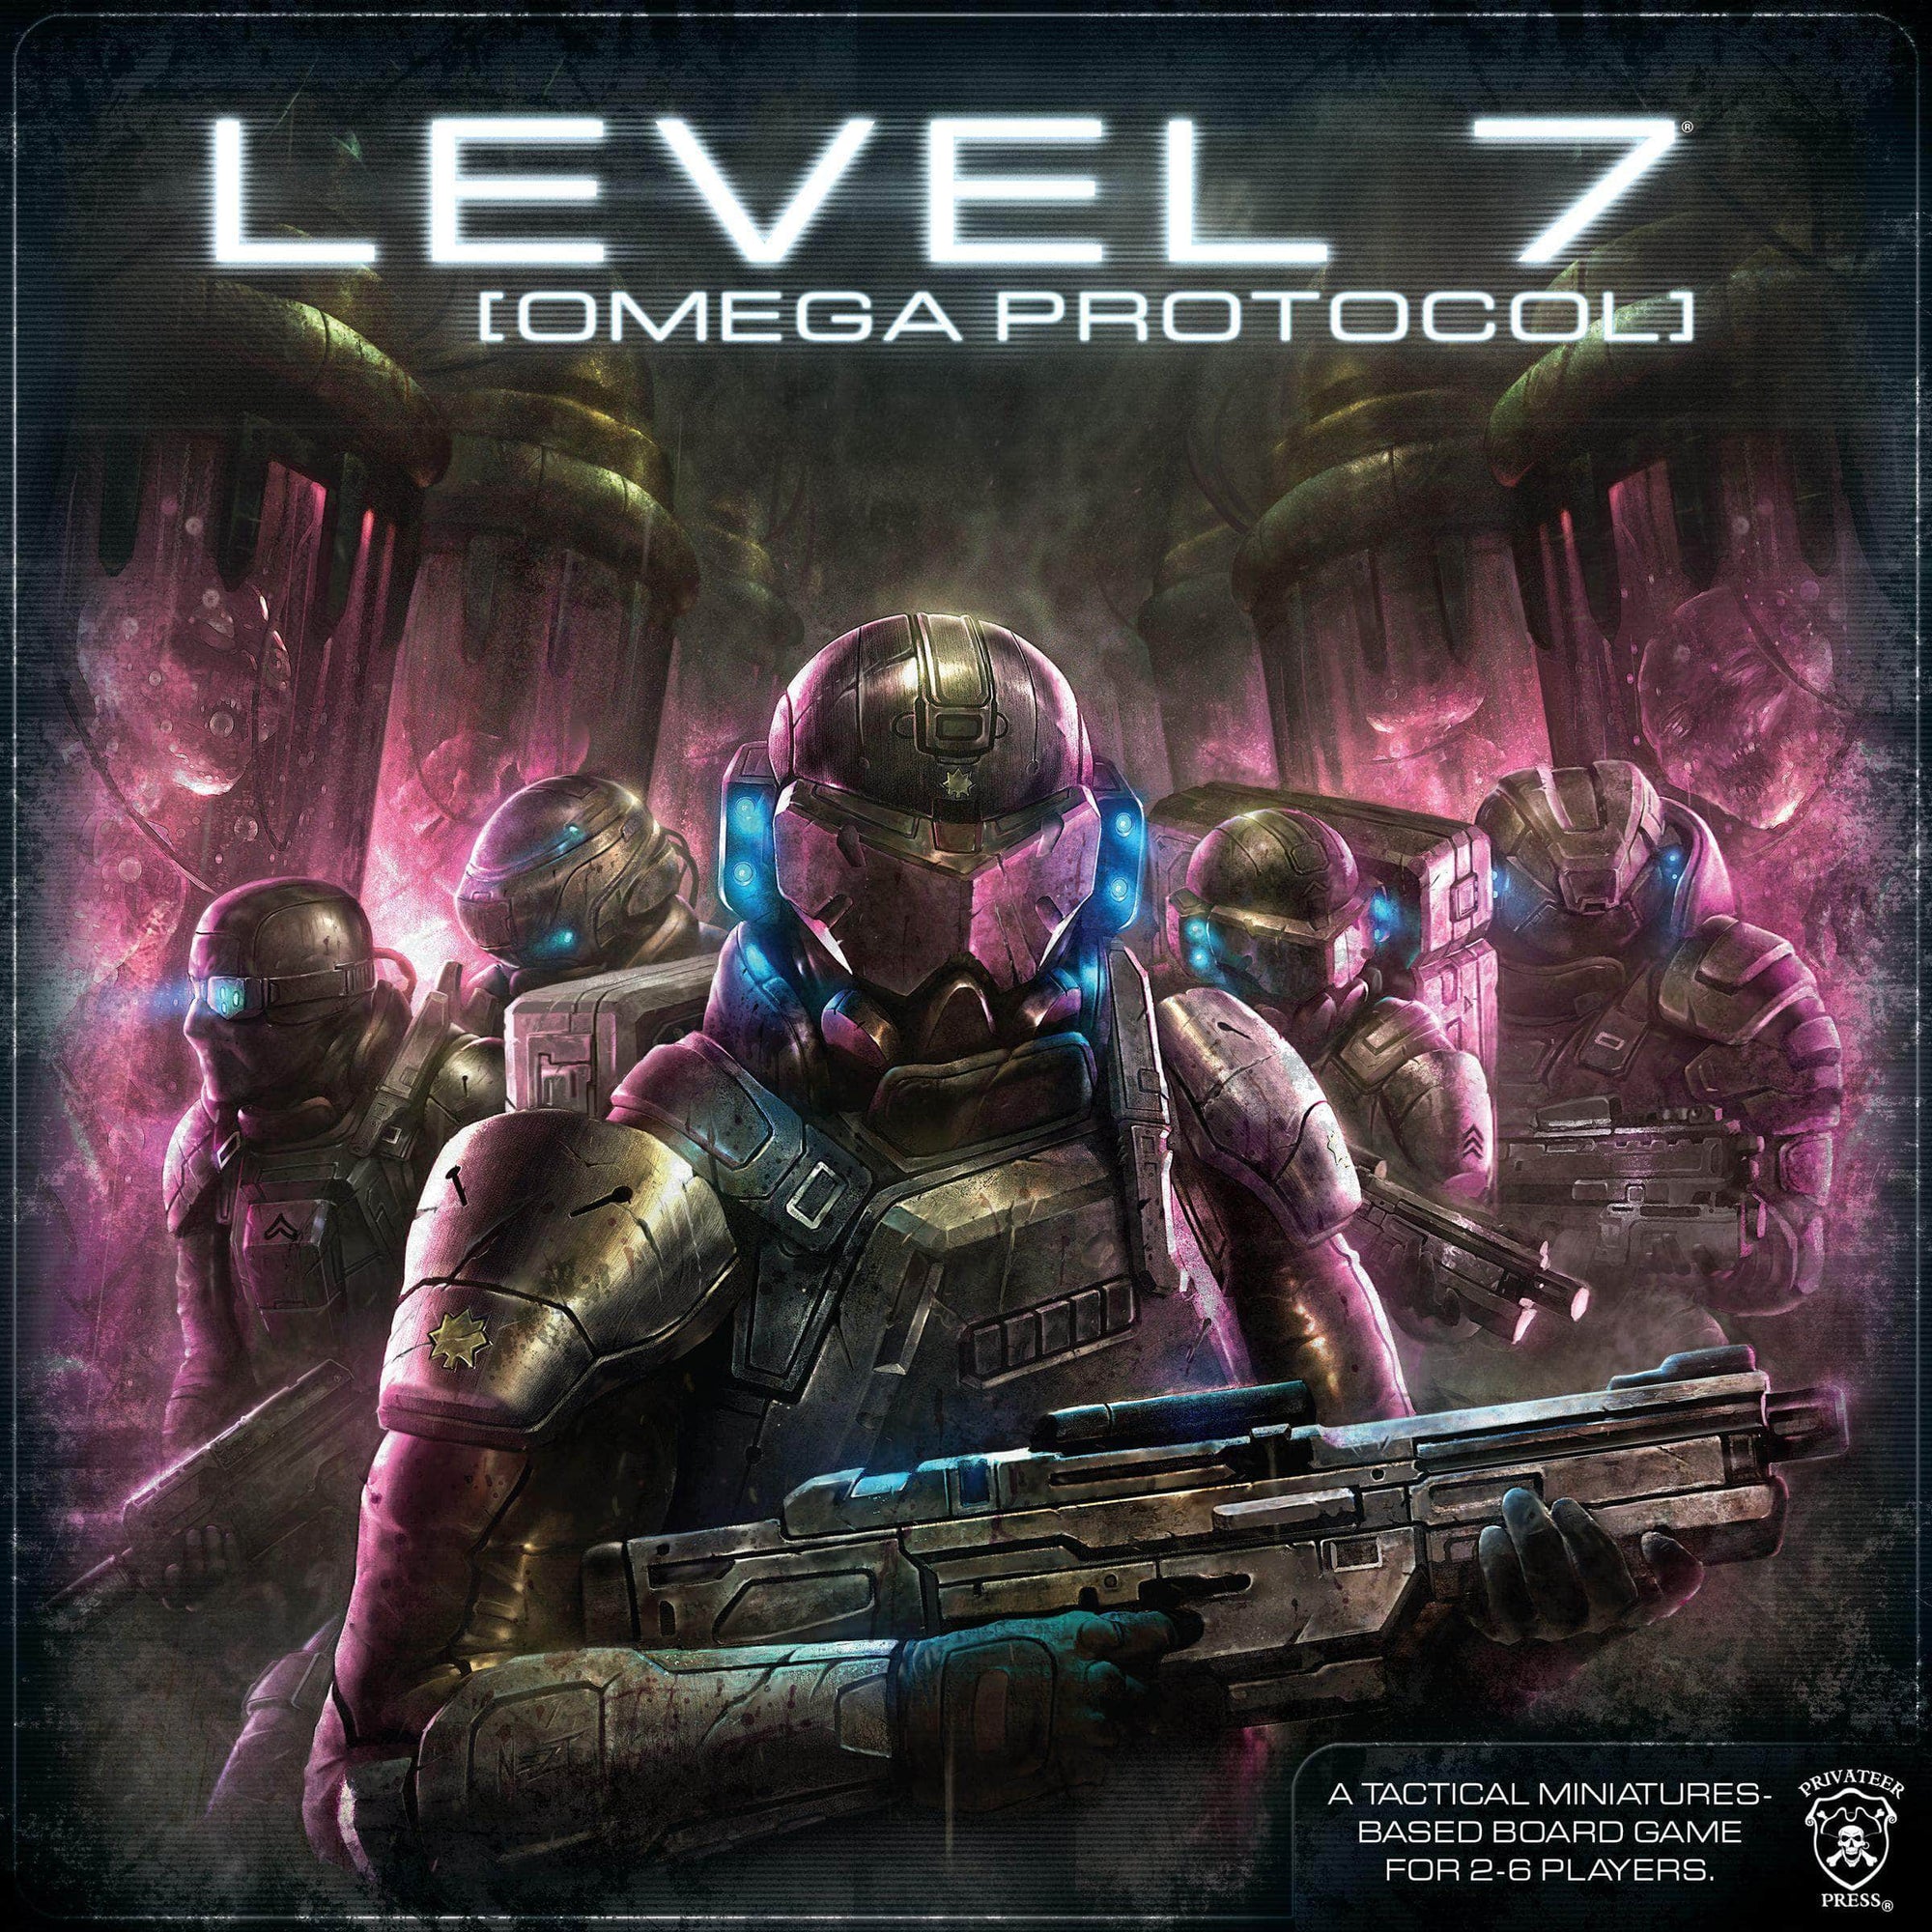 ระดับ 7 [Omega Protocol] (Retail Edition) เกมกระดานค้าปลีก Privateer Press KS800363A